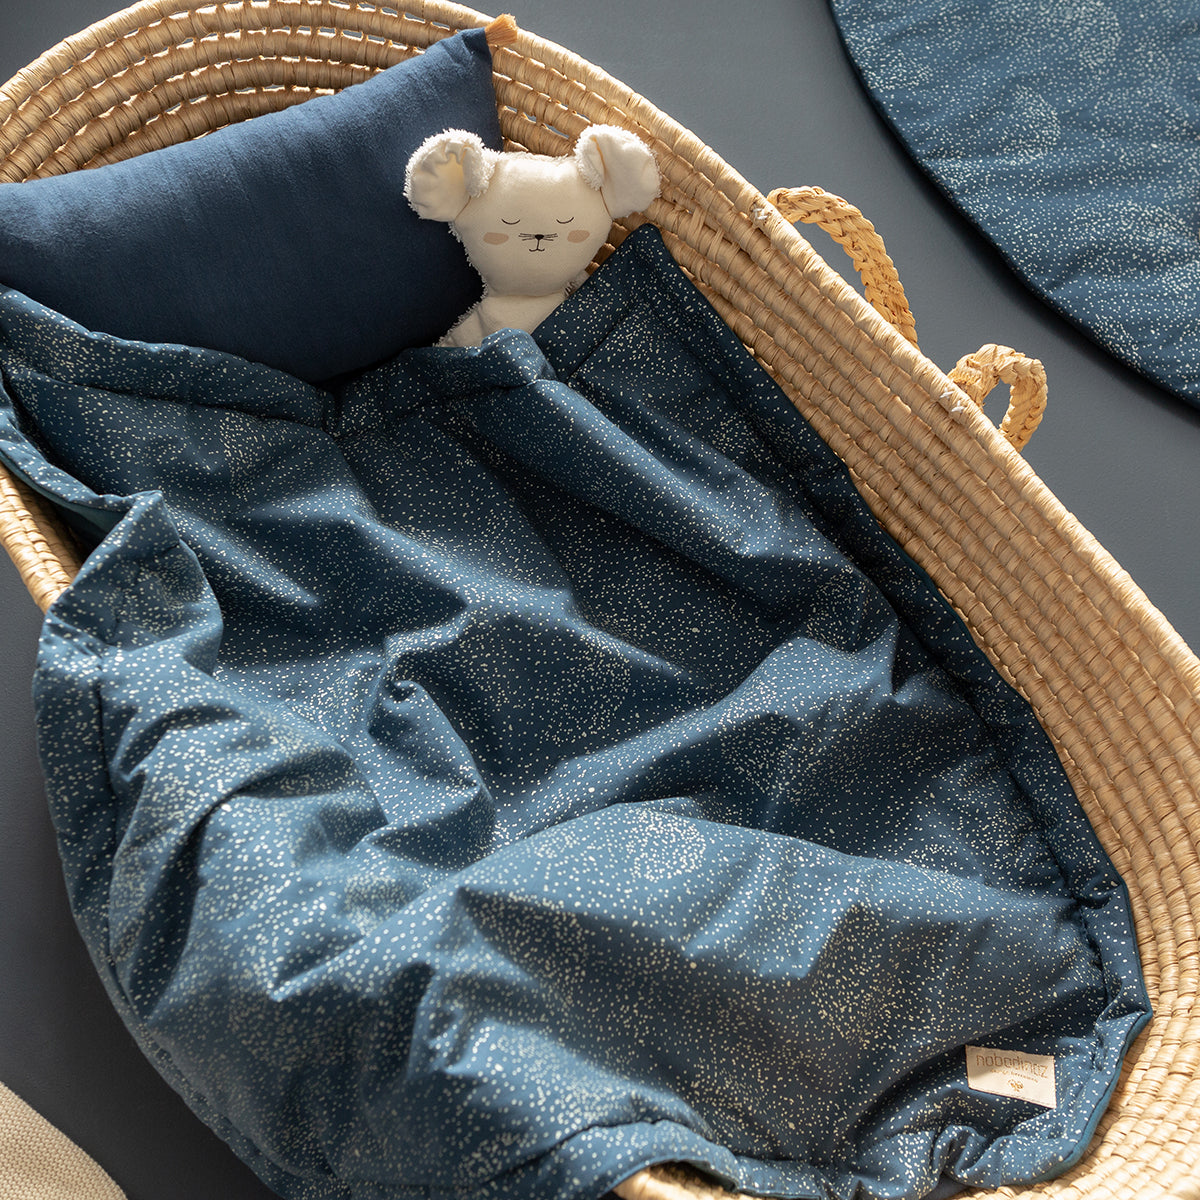 Droom heerlijk weg met de Nobodinoz Laponia mini deken in gold bubble night blue. Met deze superzachte deken voor de wieg of kinderwagen weet jij zeker dat jouw baby heerlijk warm ligt te slapen. VanZus